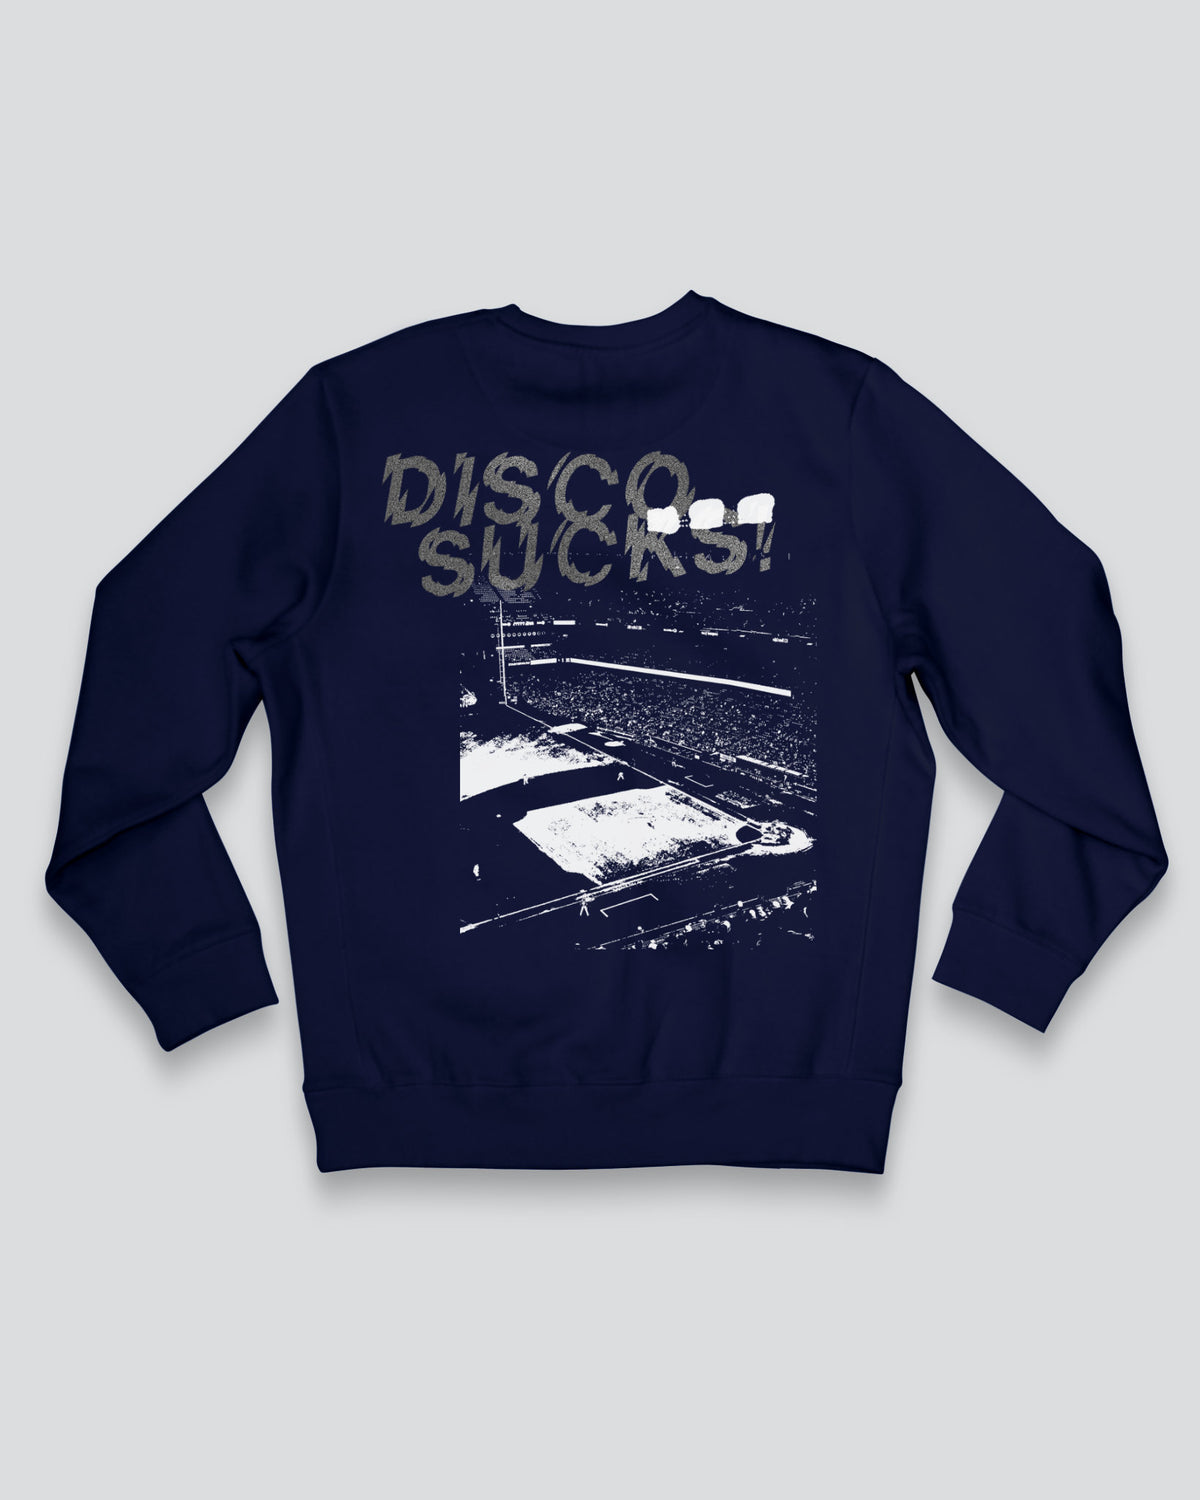 DISCO DEMOLISHED Luxury Skybox Baseball Sweatshirt